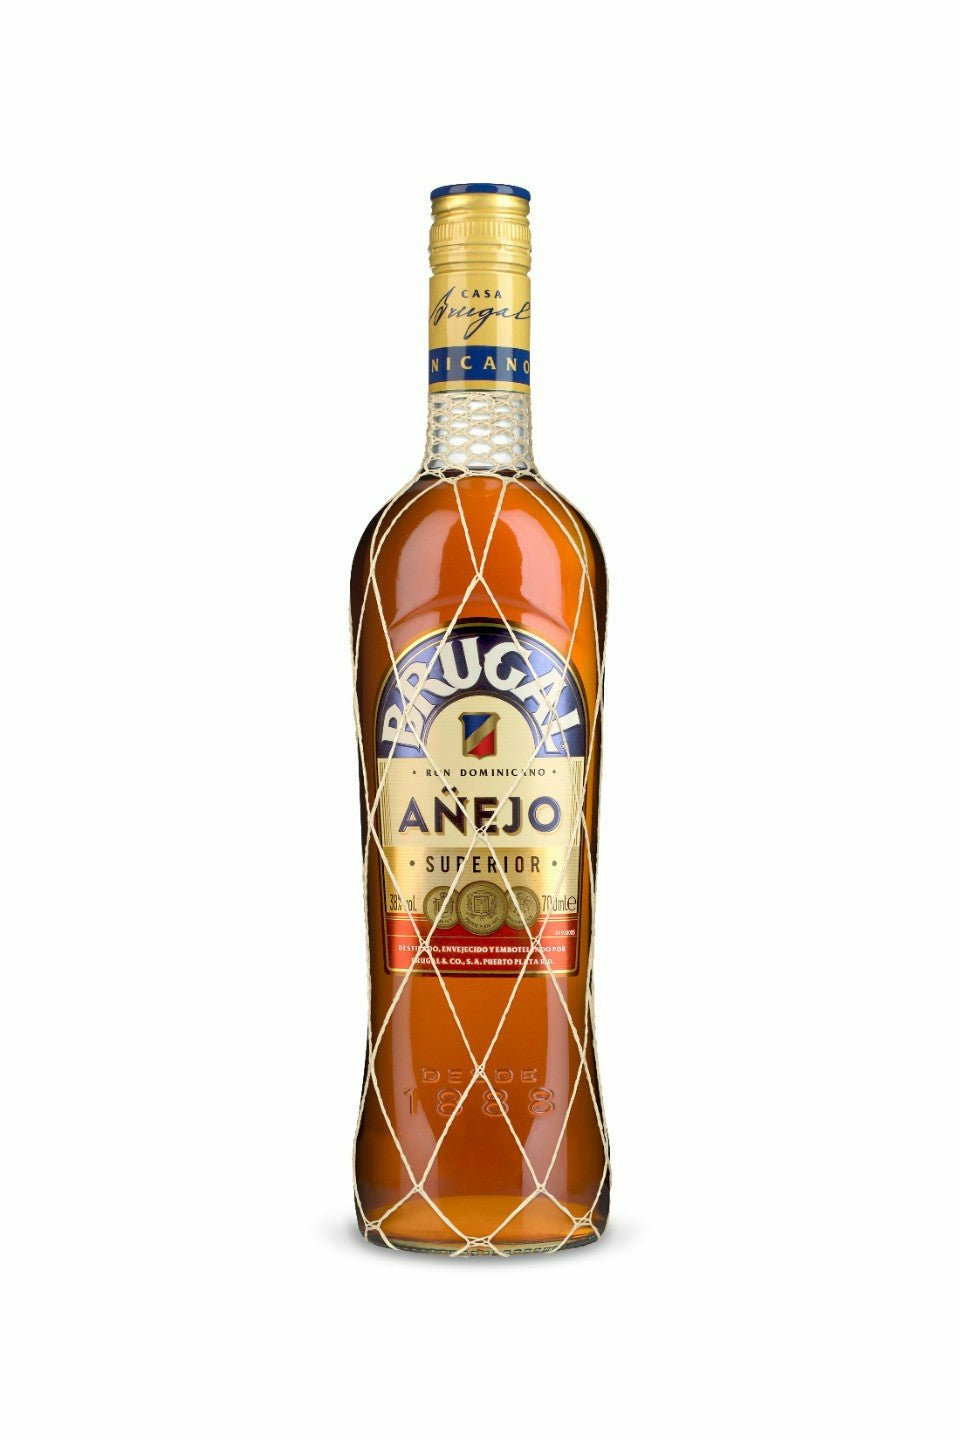 Brugal Anejo Rum - francosliquorstore